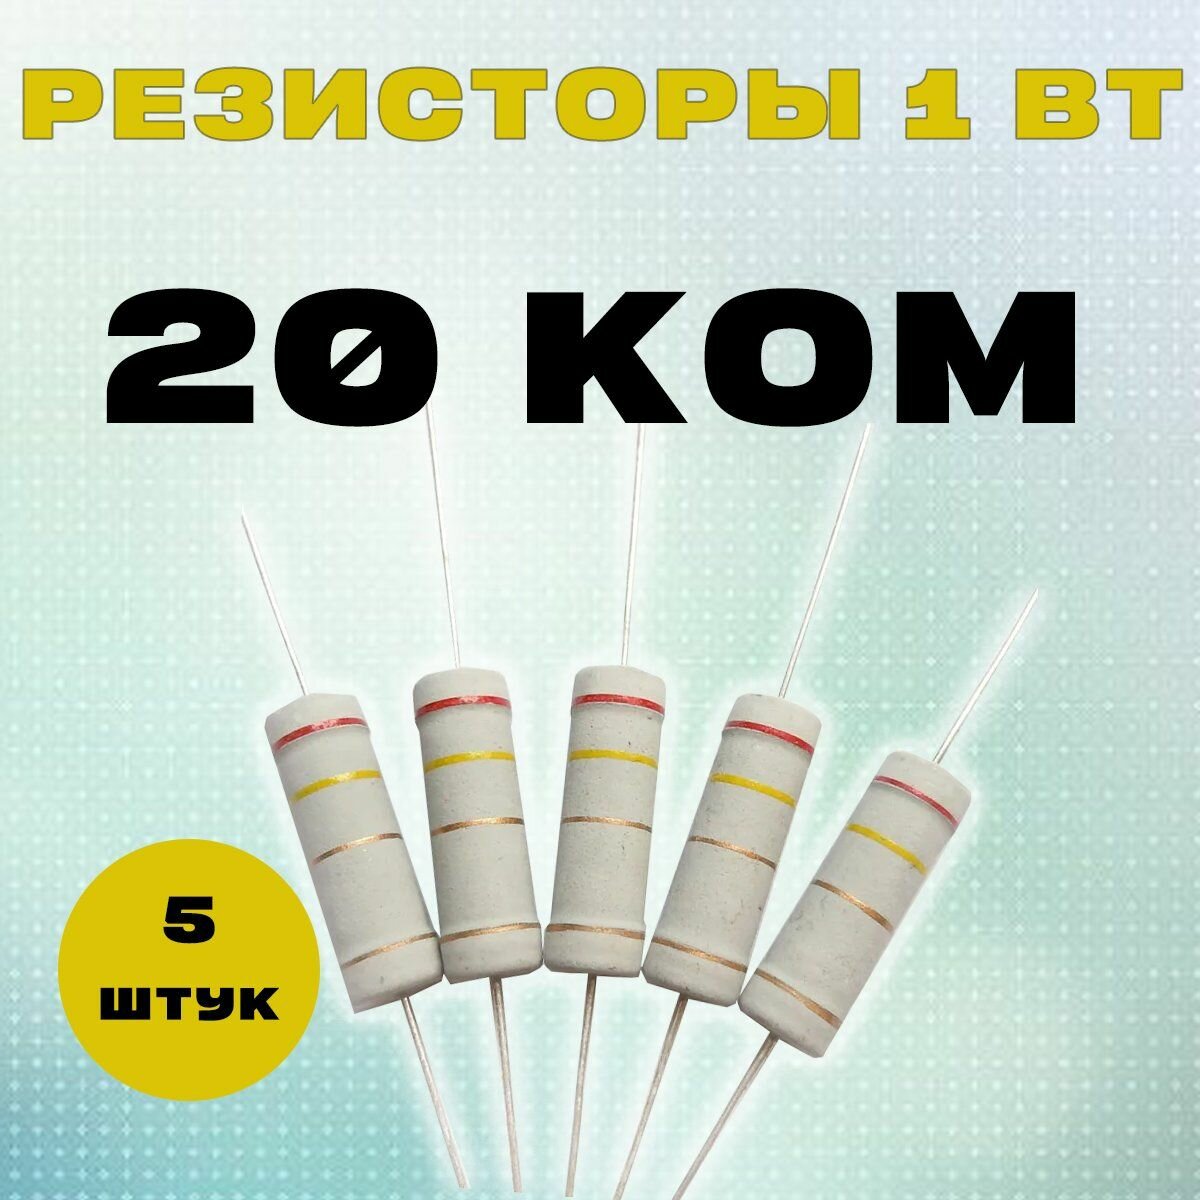 Резистор 1W 20K kOm - 1 Вт 20 кОм